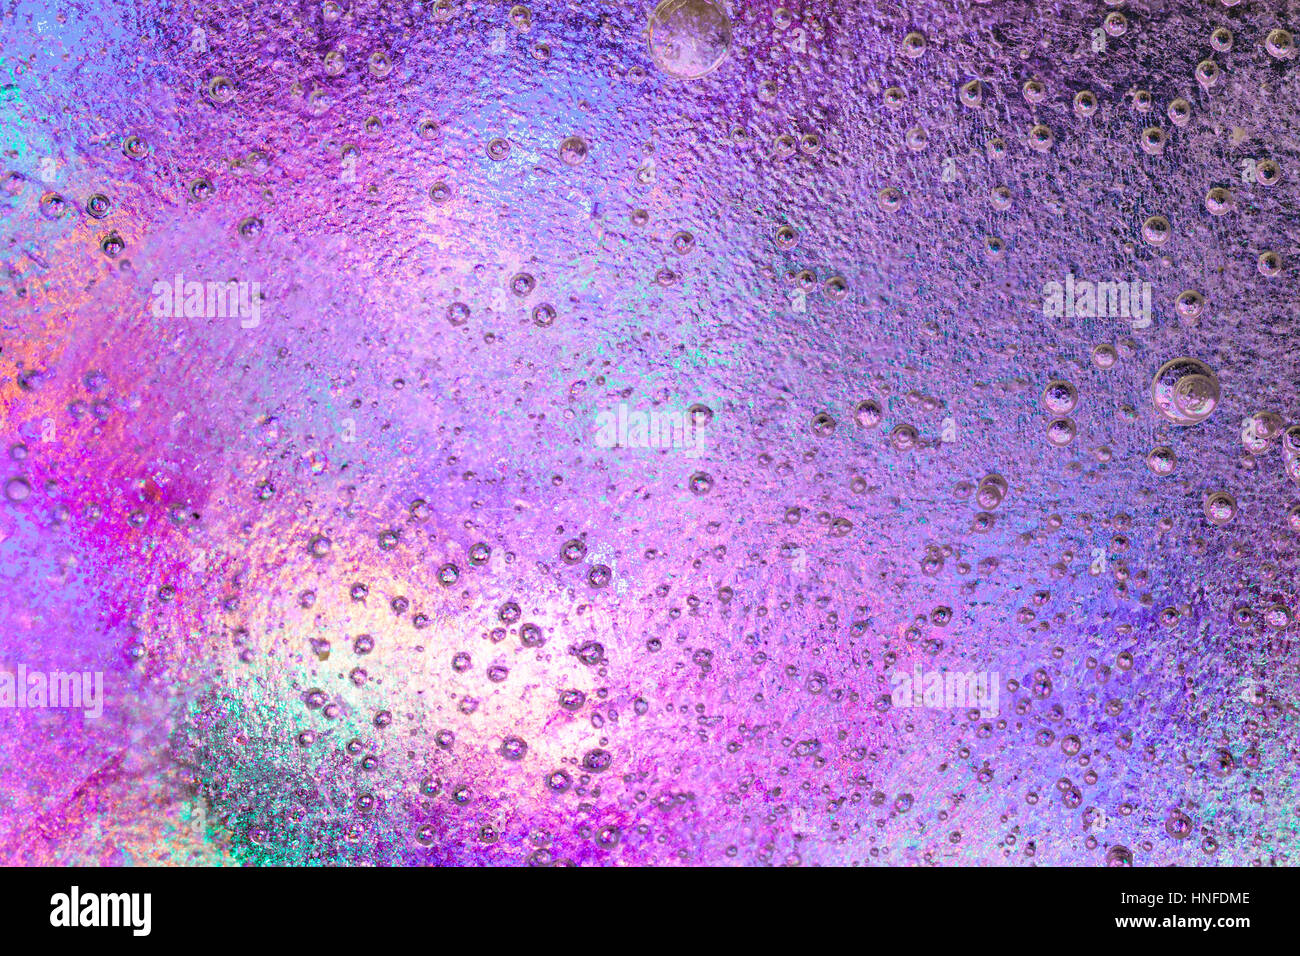 Rosa Eis mit schönen Farben unten. Große und kleine eingeschlossene Luftblasen alles über das Eis. Stockfoto